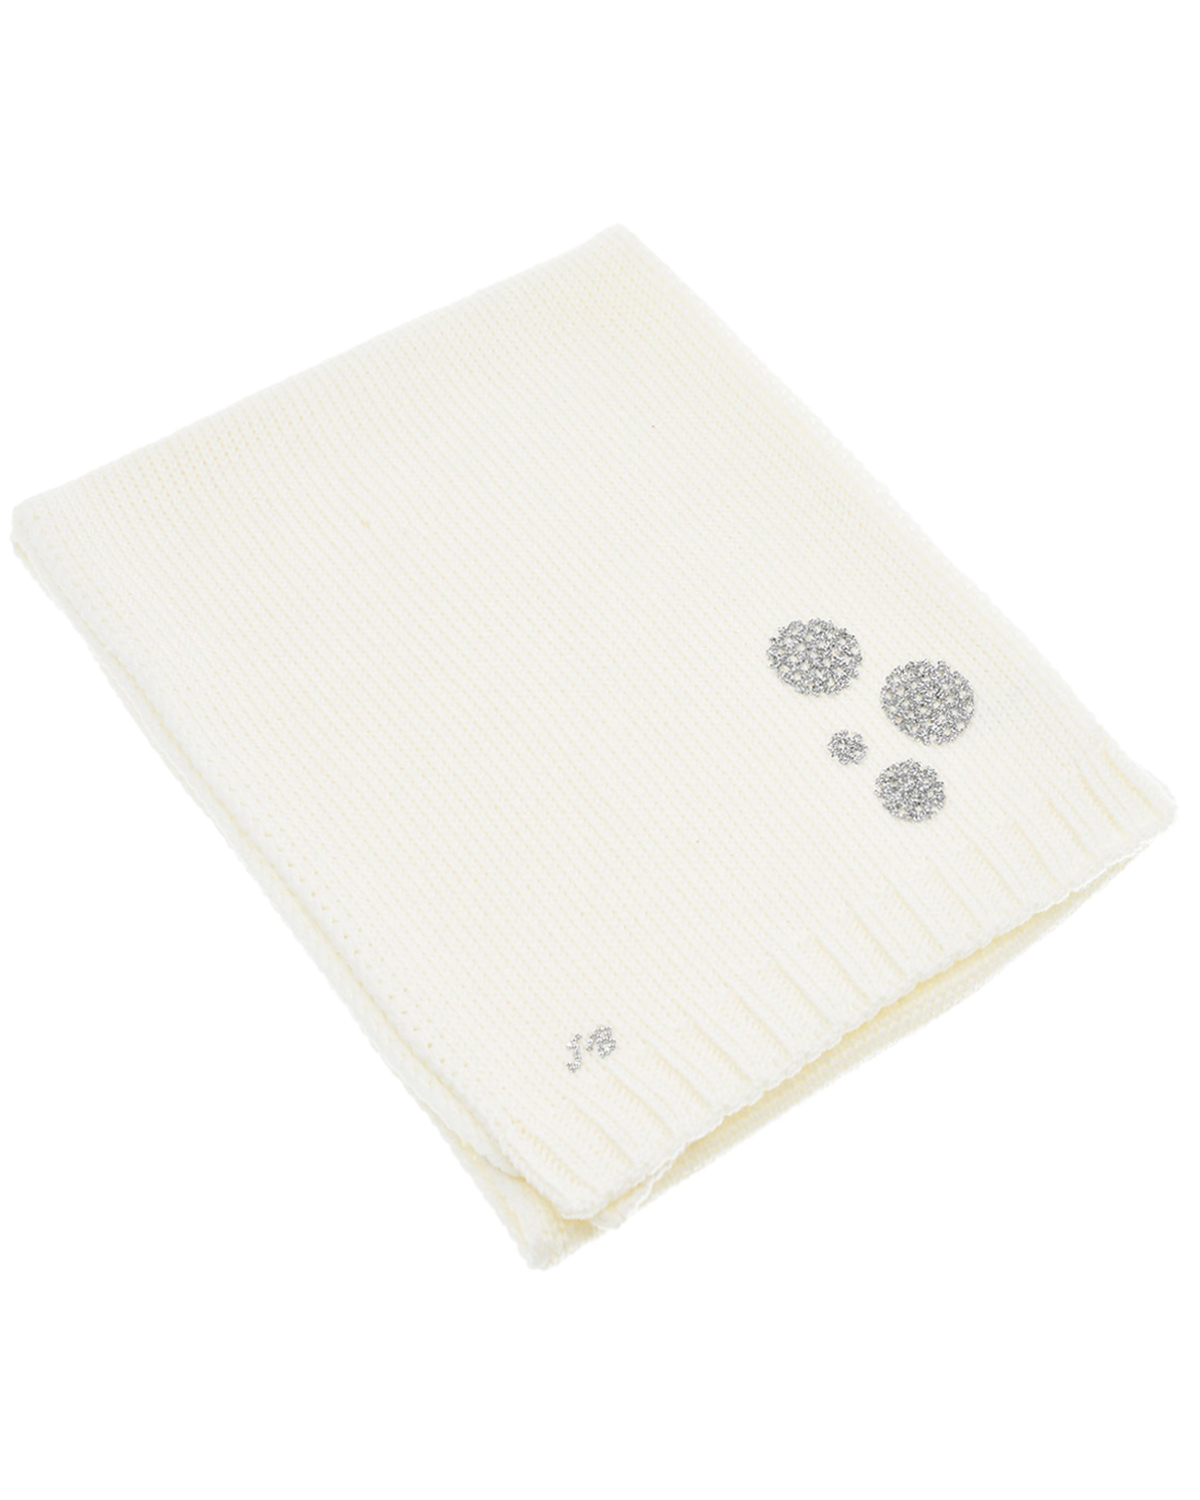 Шерстяной шарф с серебристым декором Joli Bebe детский, размер unica, цвет белый - фото 1